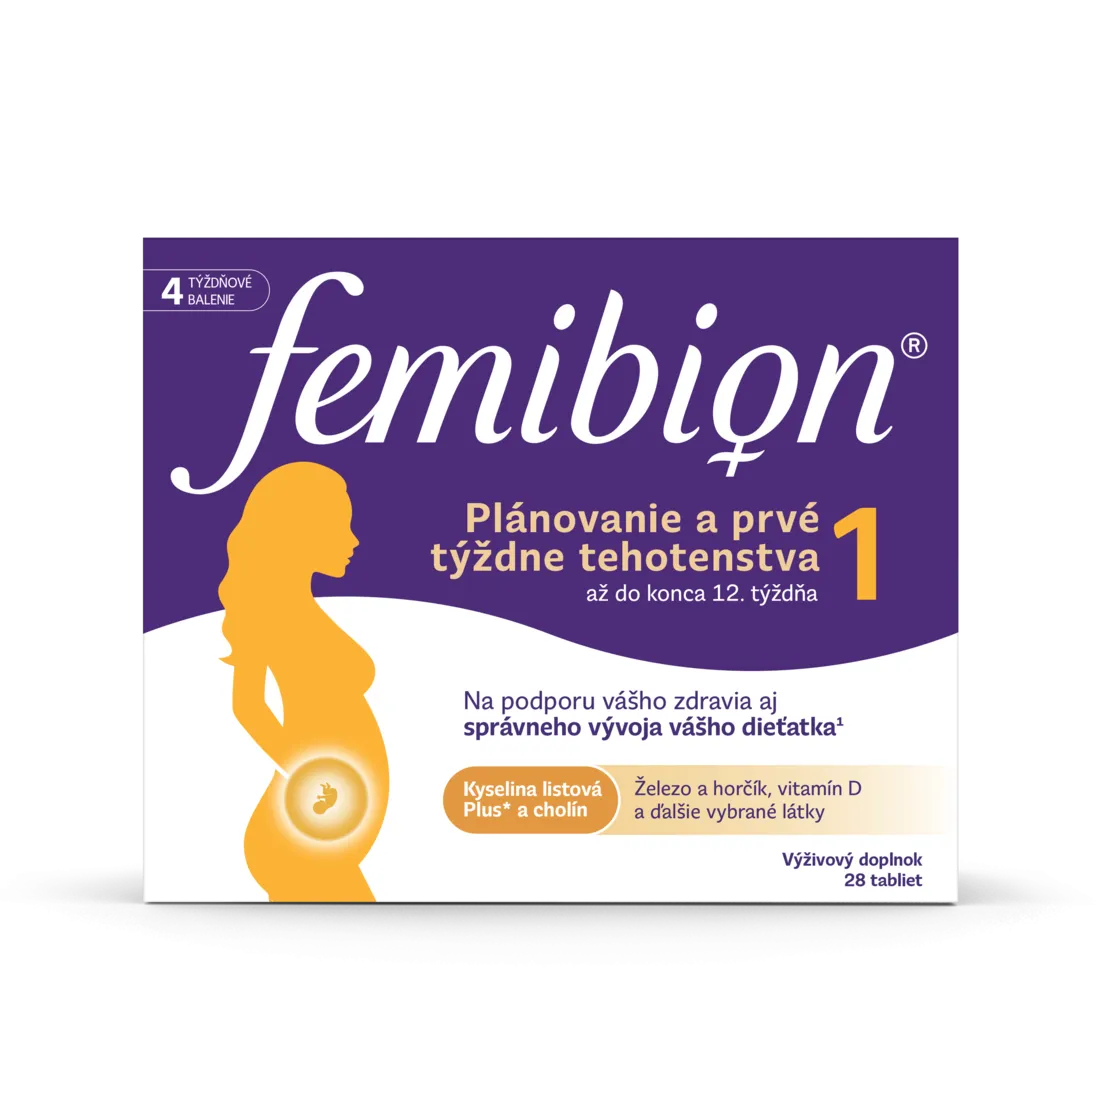 Femibion 1 Plánovanie a prvé týždne tehotenstva, 28 tbl 1×28 tbl, výživový doplnok